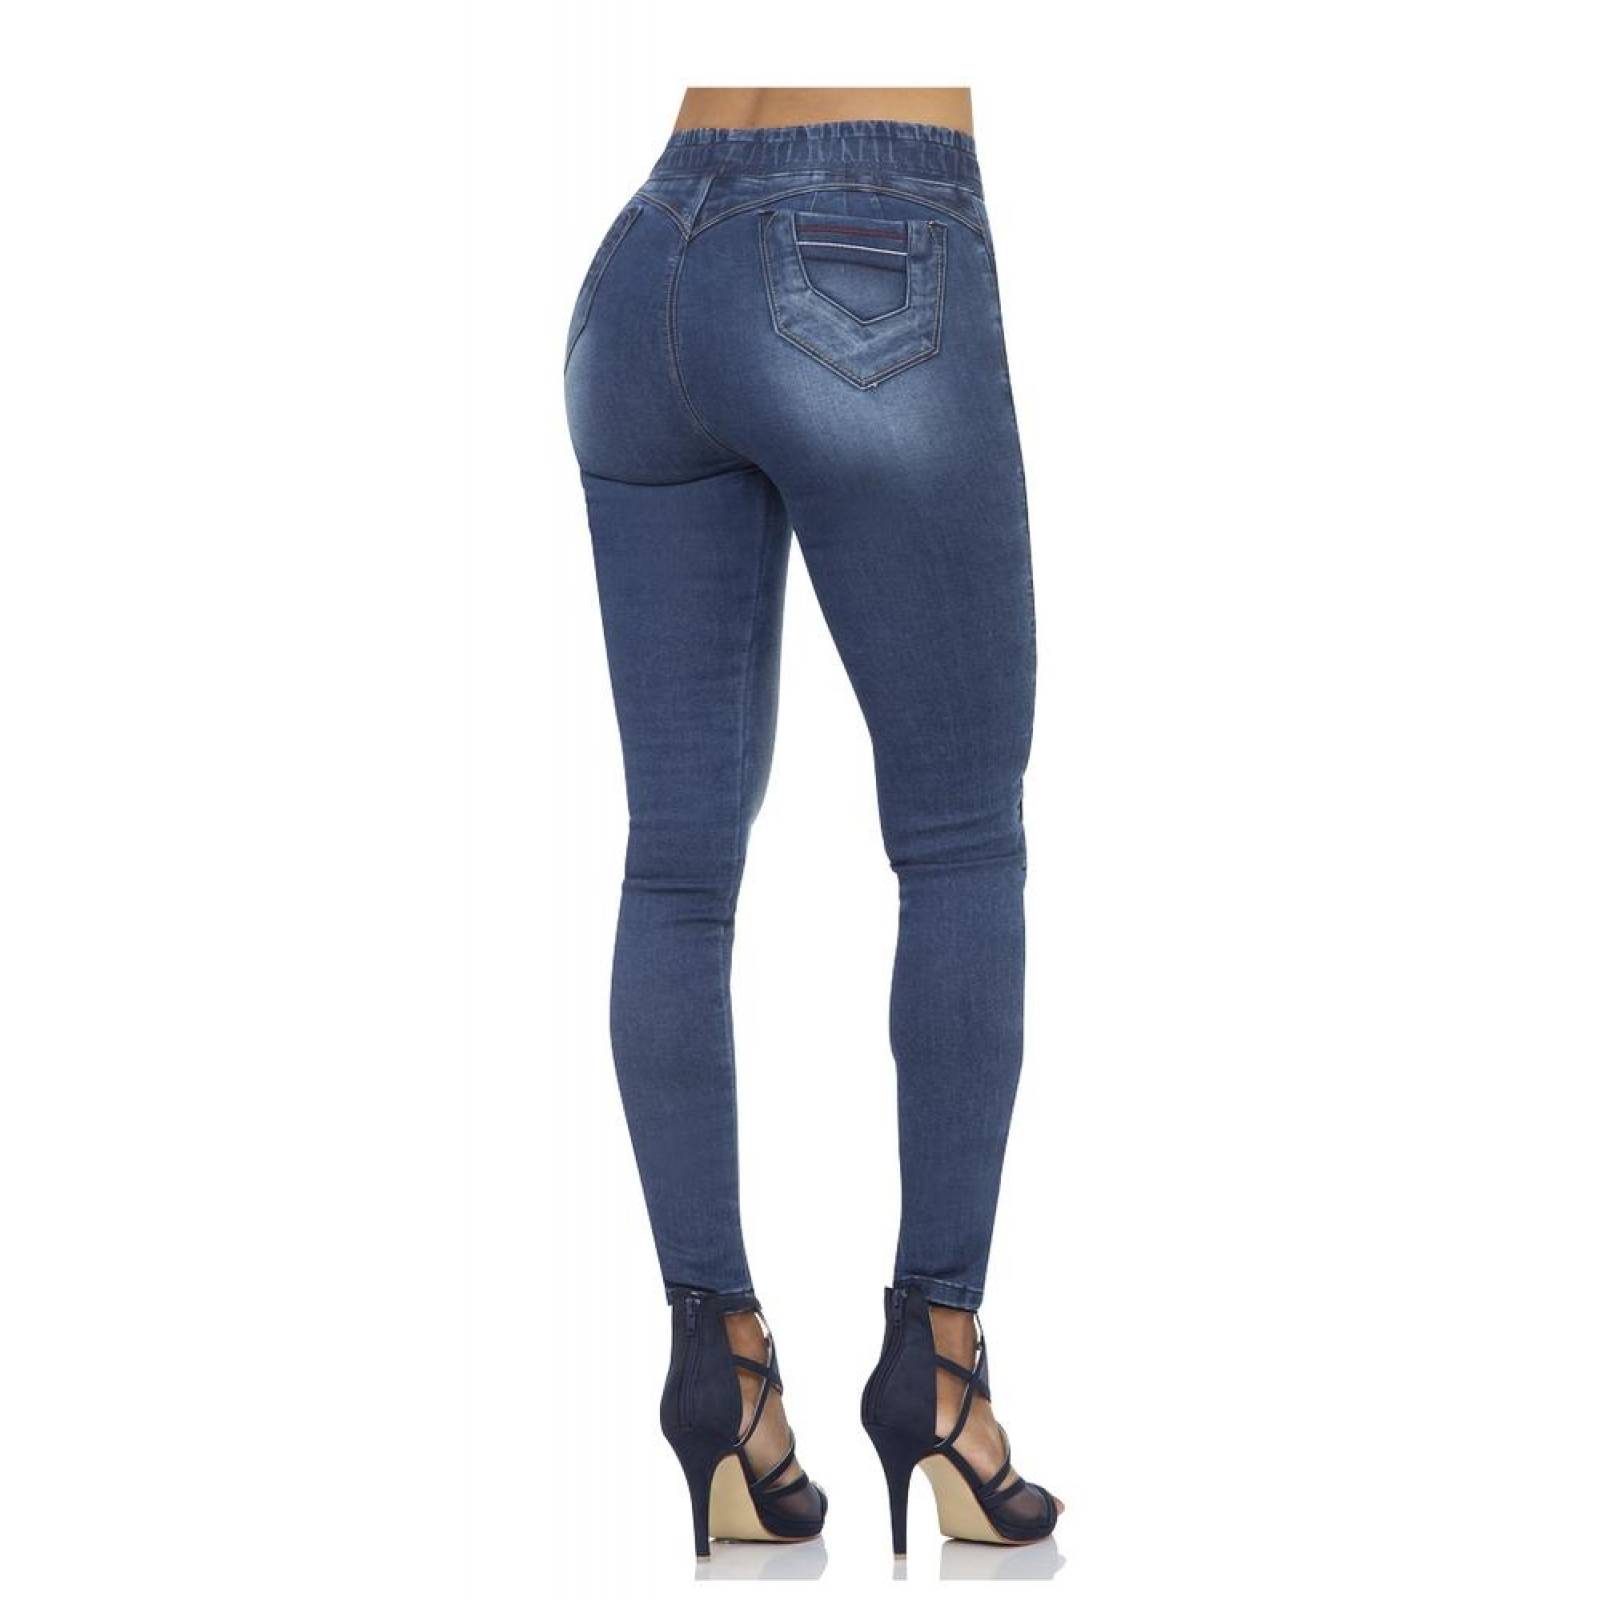 Jeans Moda Mujer Furor Stone 62105206 Mezclilla Stretch 